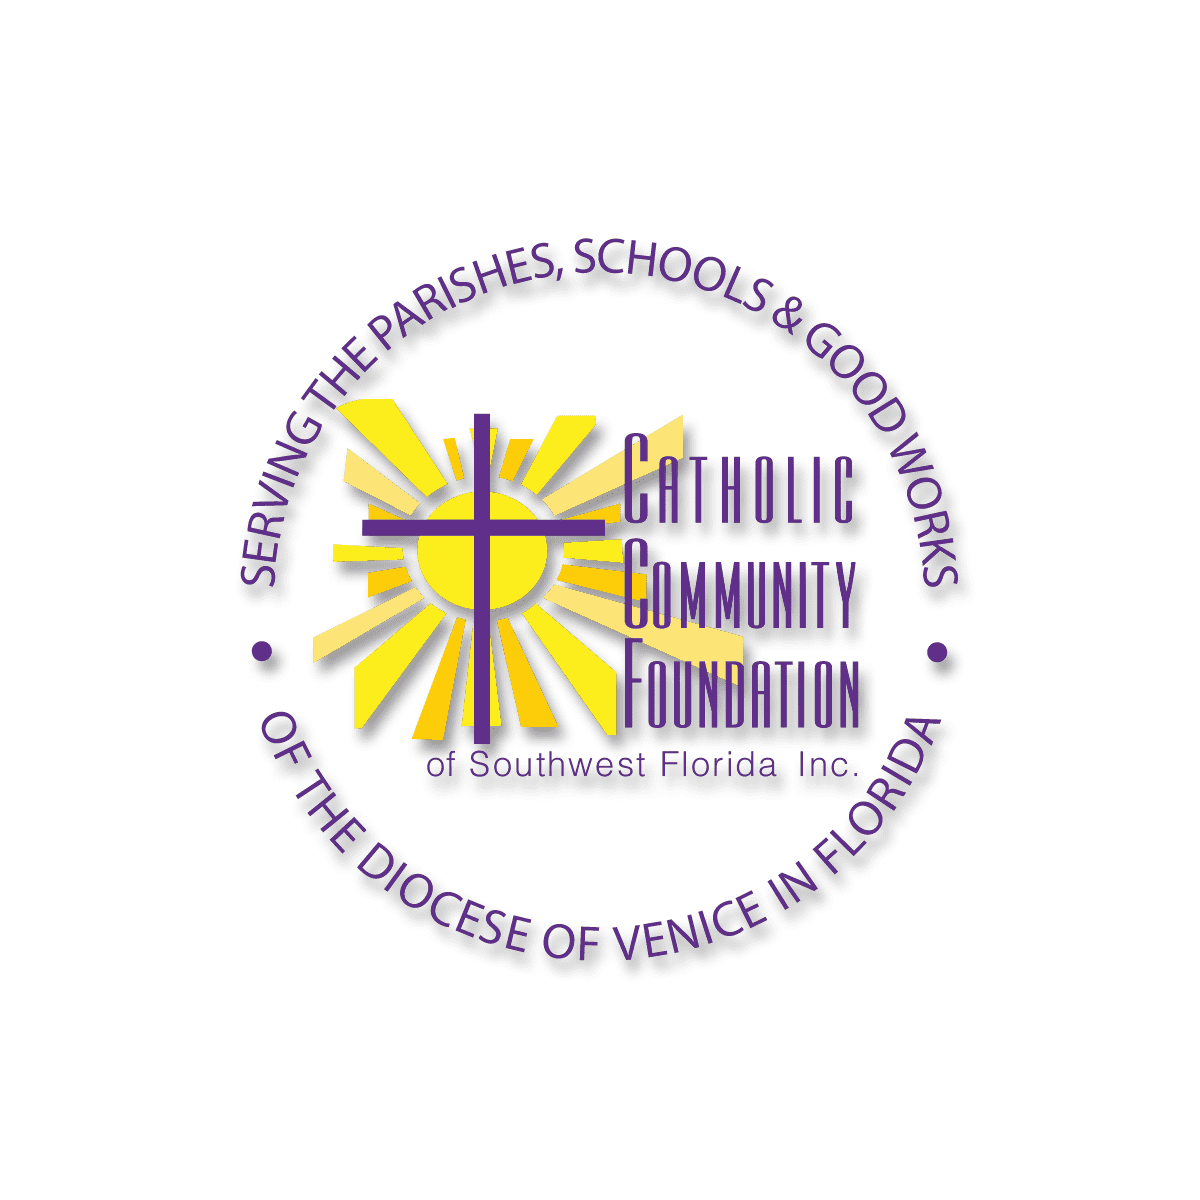 Catholic Community Foundation Operations Fund